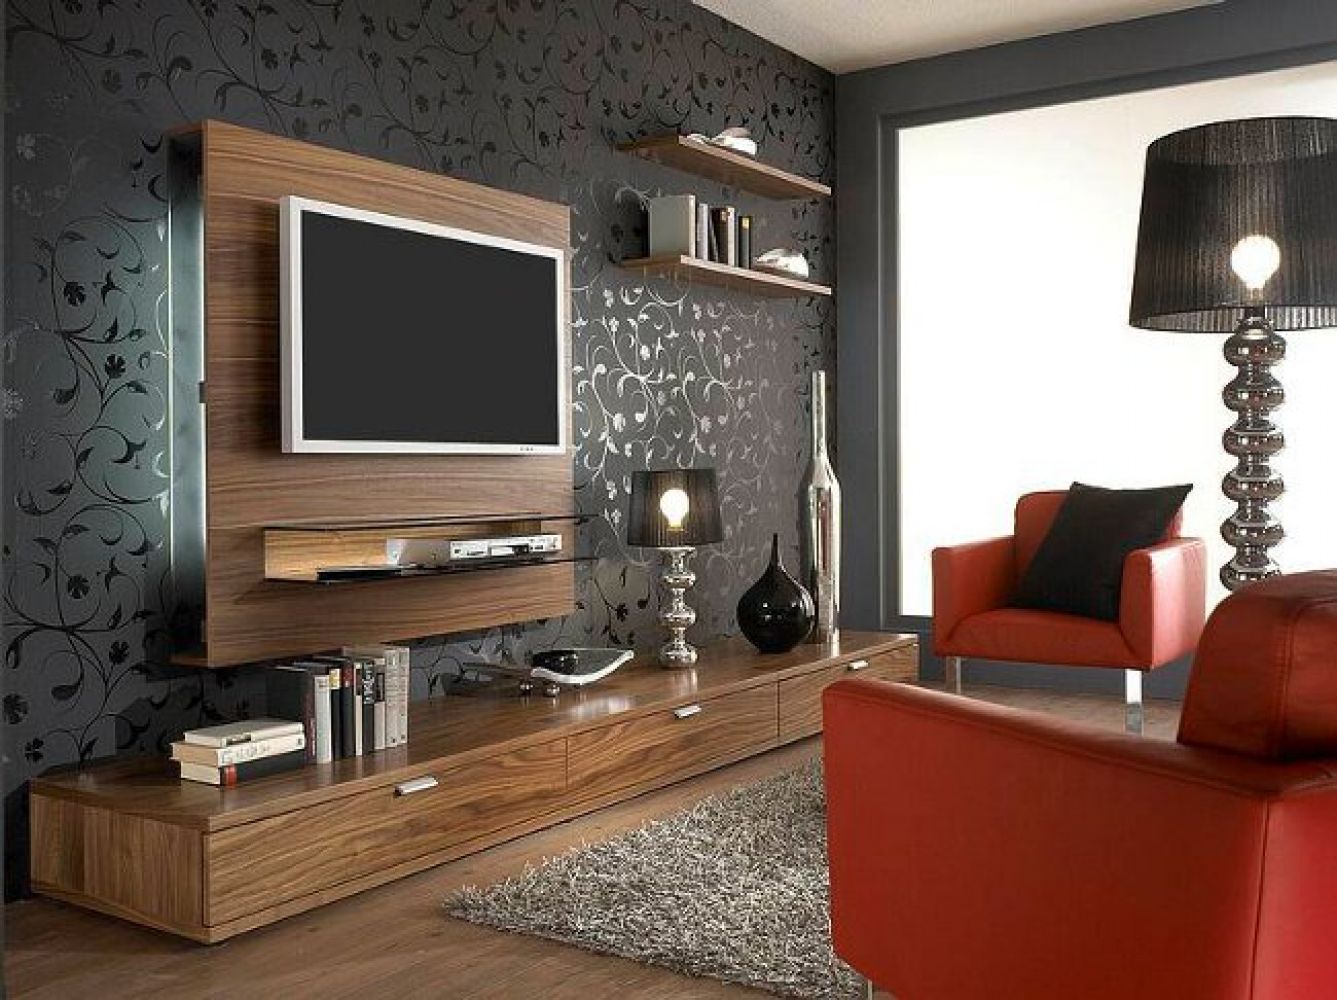 Как лучше расположить телевизор в интерьере гостиной